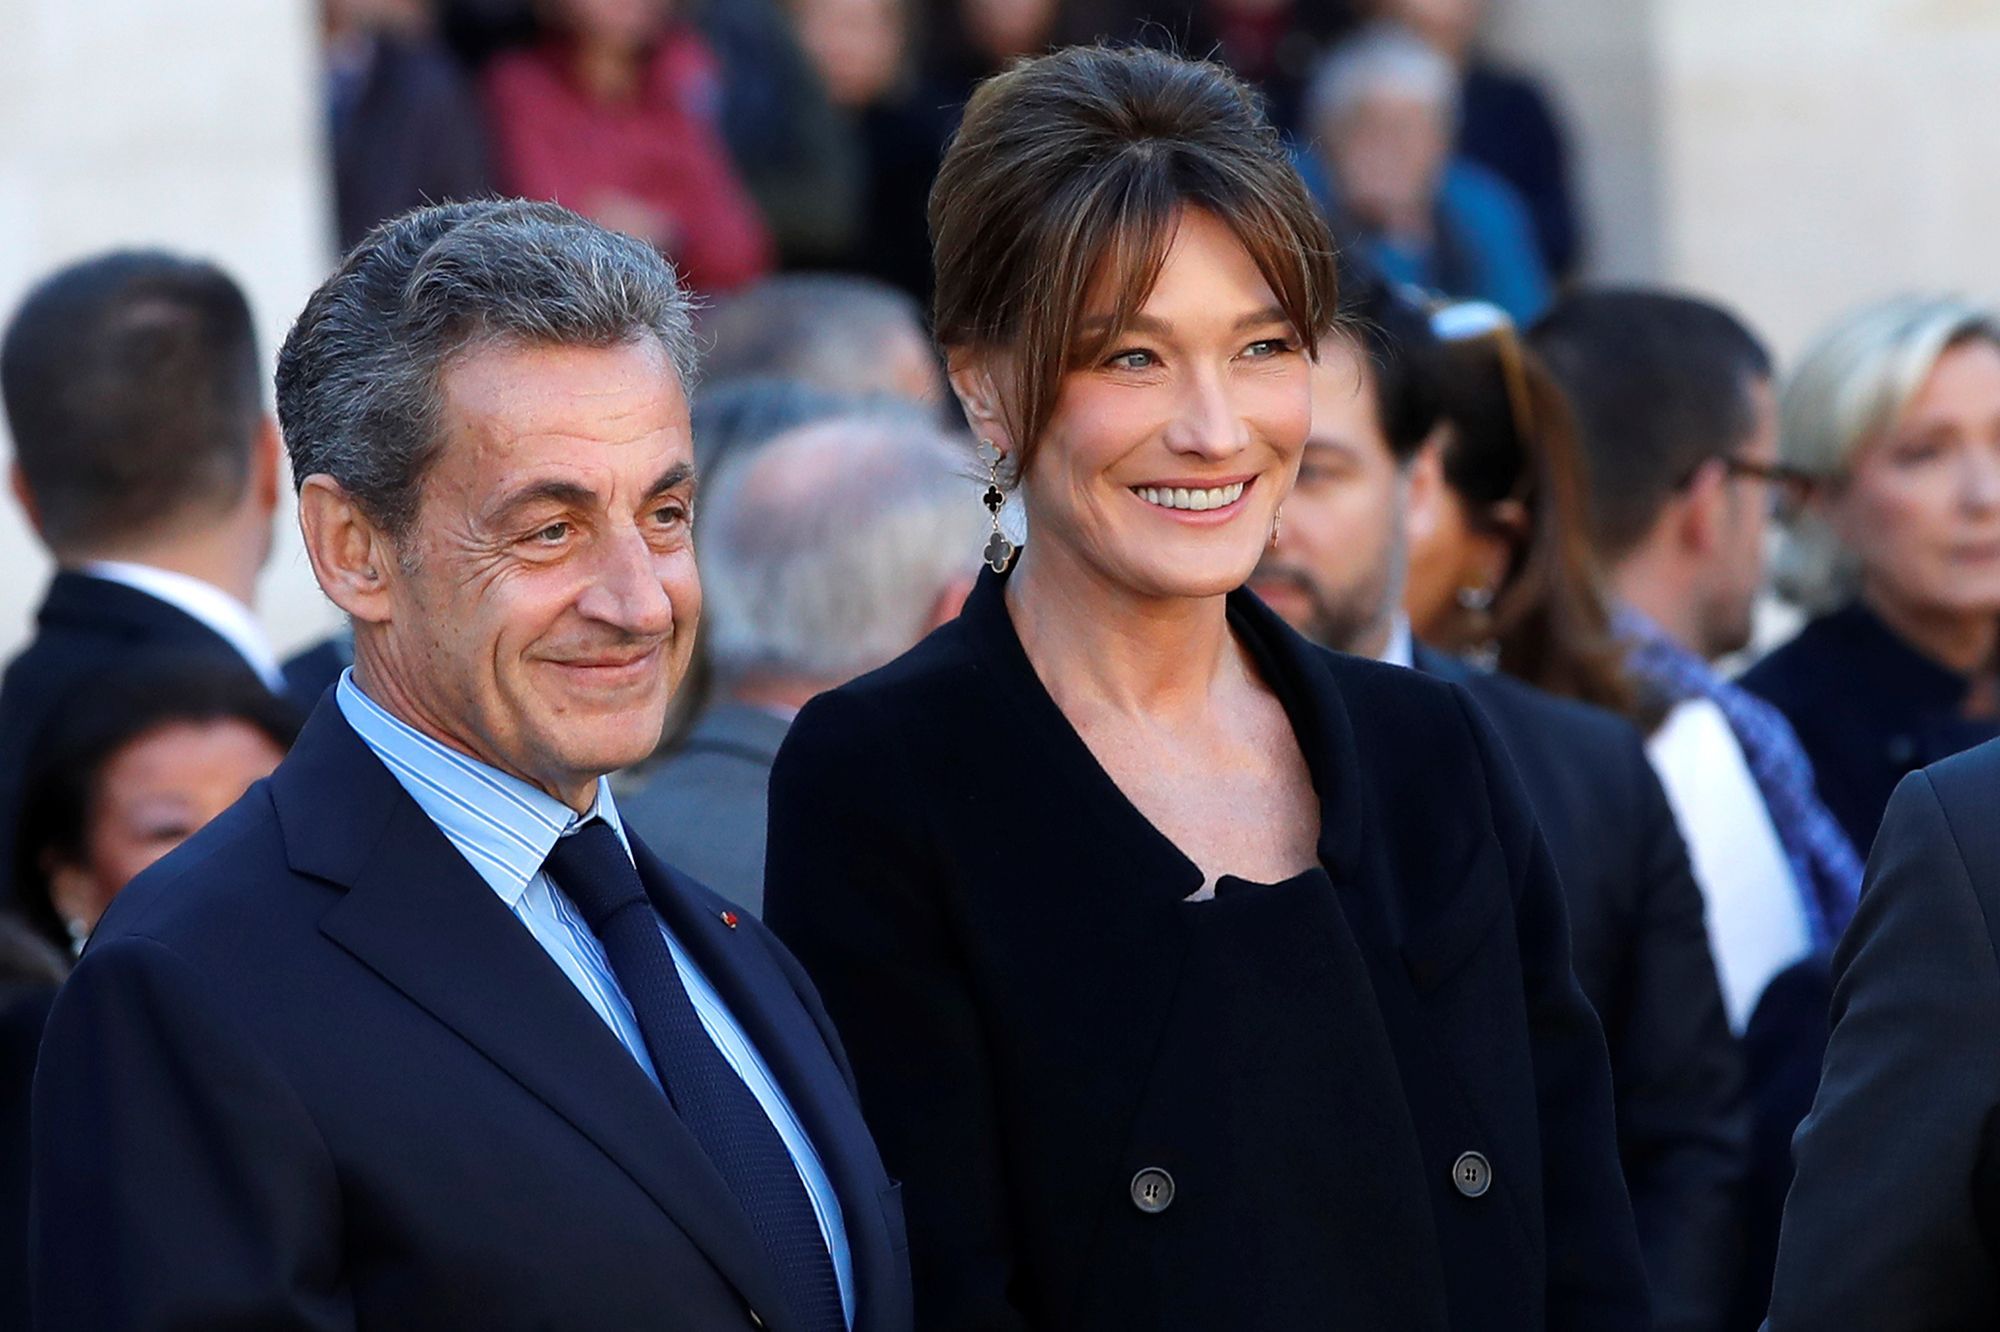 Nicolas Sarkozy condamné : Carla Bruni partage un cliché en guise de soutien